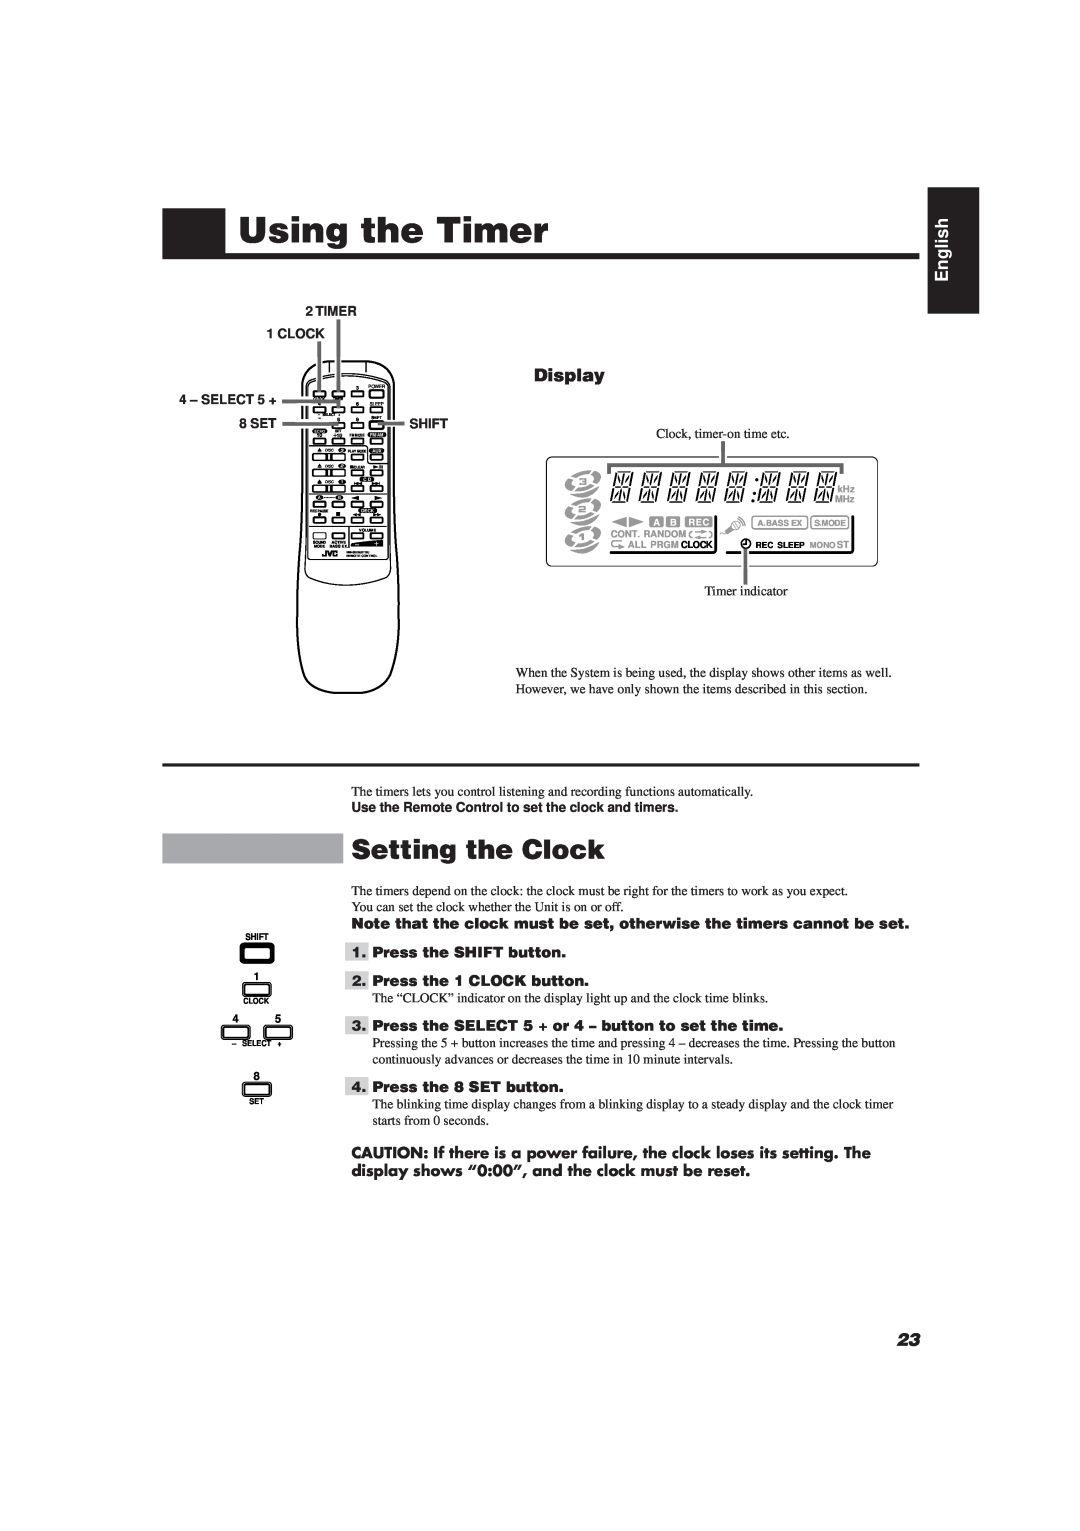 JVC CA-D501T, MX-D401T manual Using the Timer, Setting the Clock, English, 2TIMER 1 CLOCK, SELECT 5 +, 8 SET, Shift 